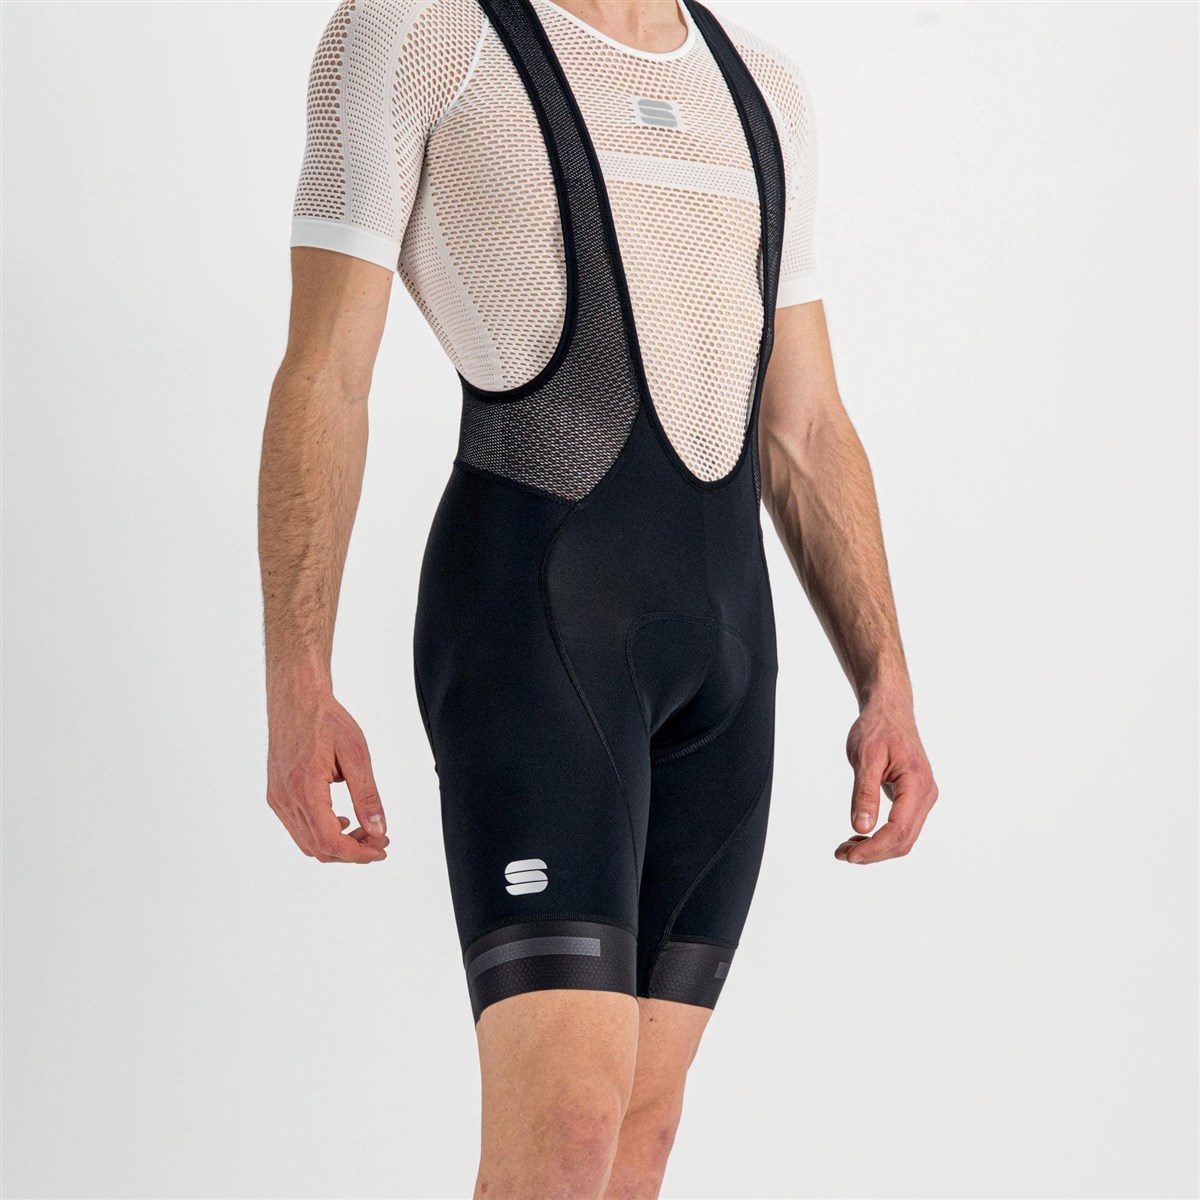 Sportful Neo Bib Shorts product image